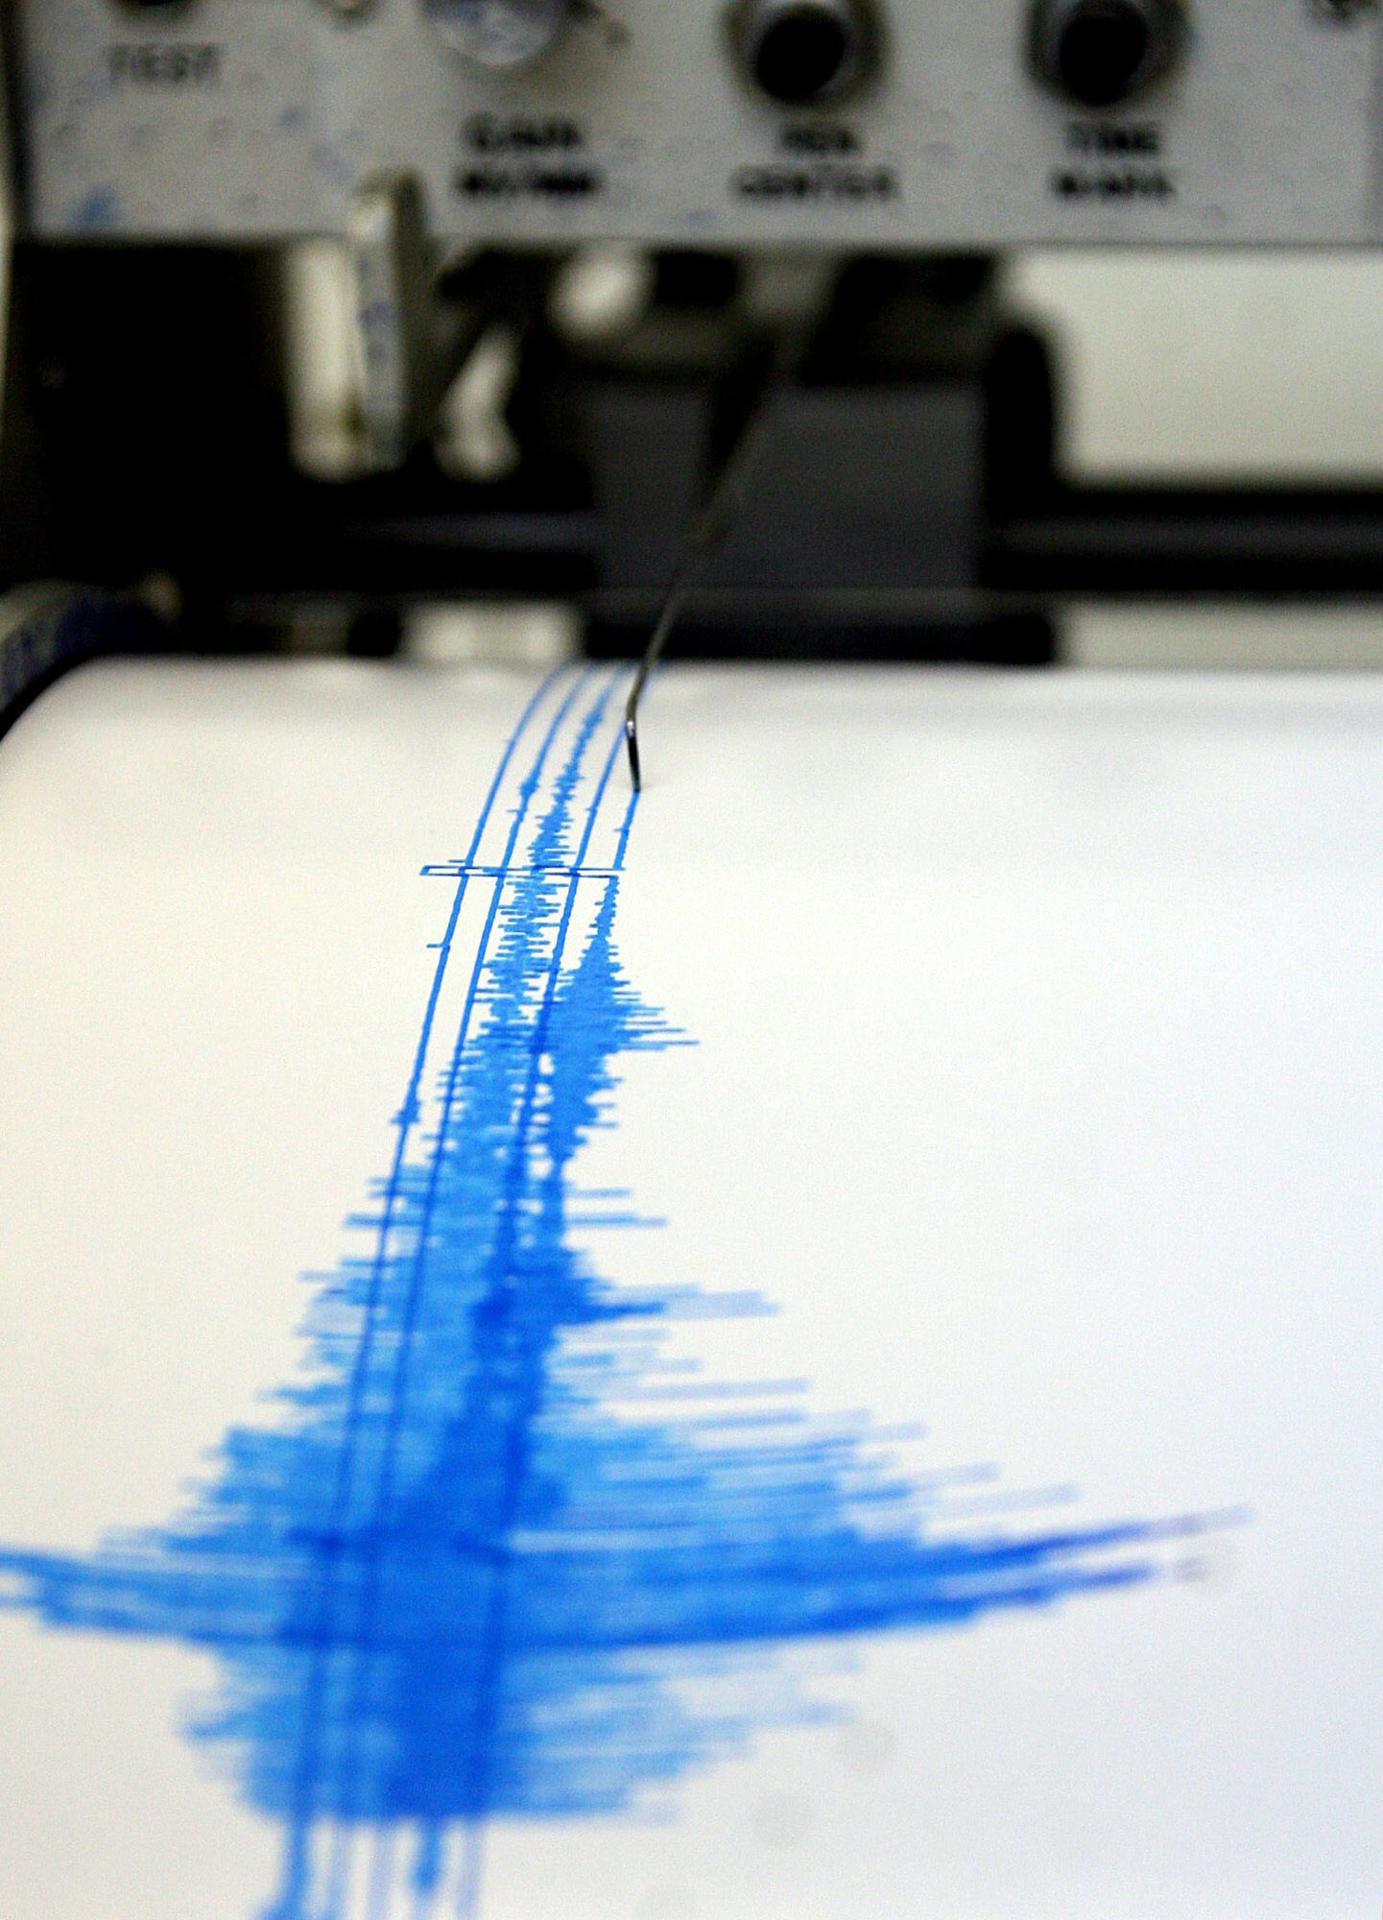 Fotografía de archivo de una lectura del sismógrafo. Imagen de archivo. EFE/Alejandro Zepeda
